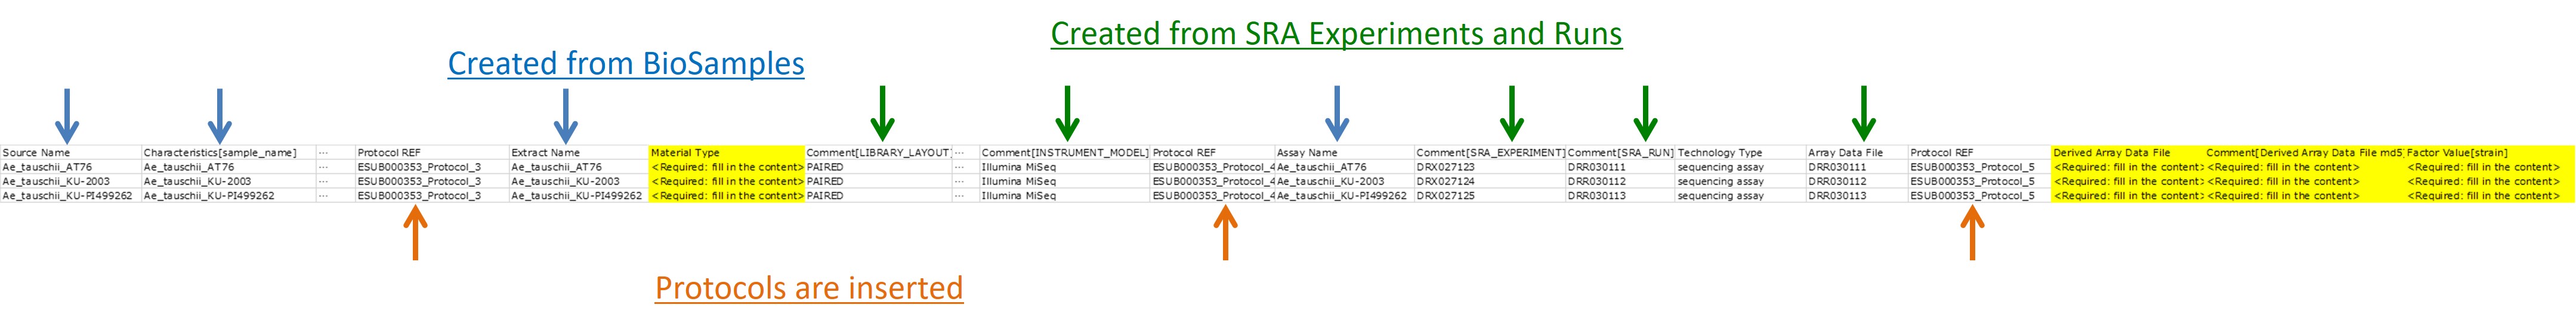 SDRF テンプレートの図解、登録者が情報を追加する必要がある部分は黄色で示されている